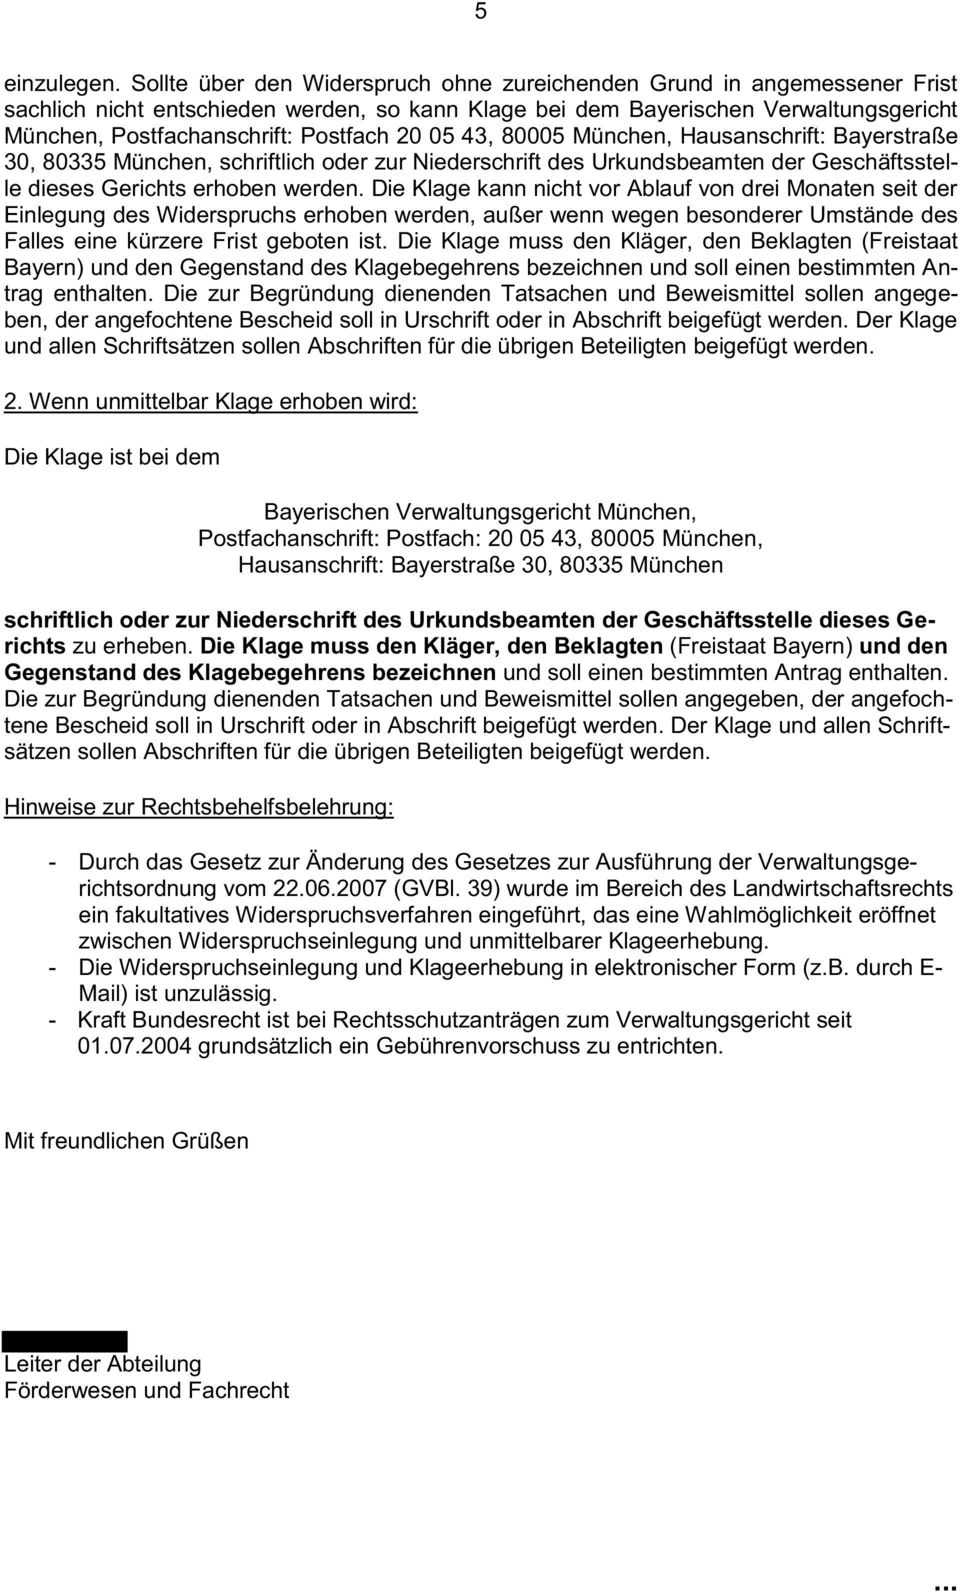 20 05 43, 80005 München, Hausanschrift: Bayerstraße 30, 80335 München, schriftlich oder zur Niederschrift des Urkundsbeamten der Geschäftsstelle dieses Gerichts erhoben werden.